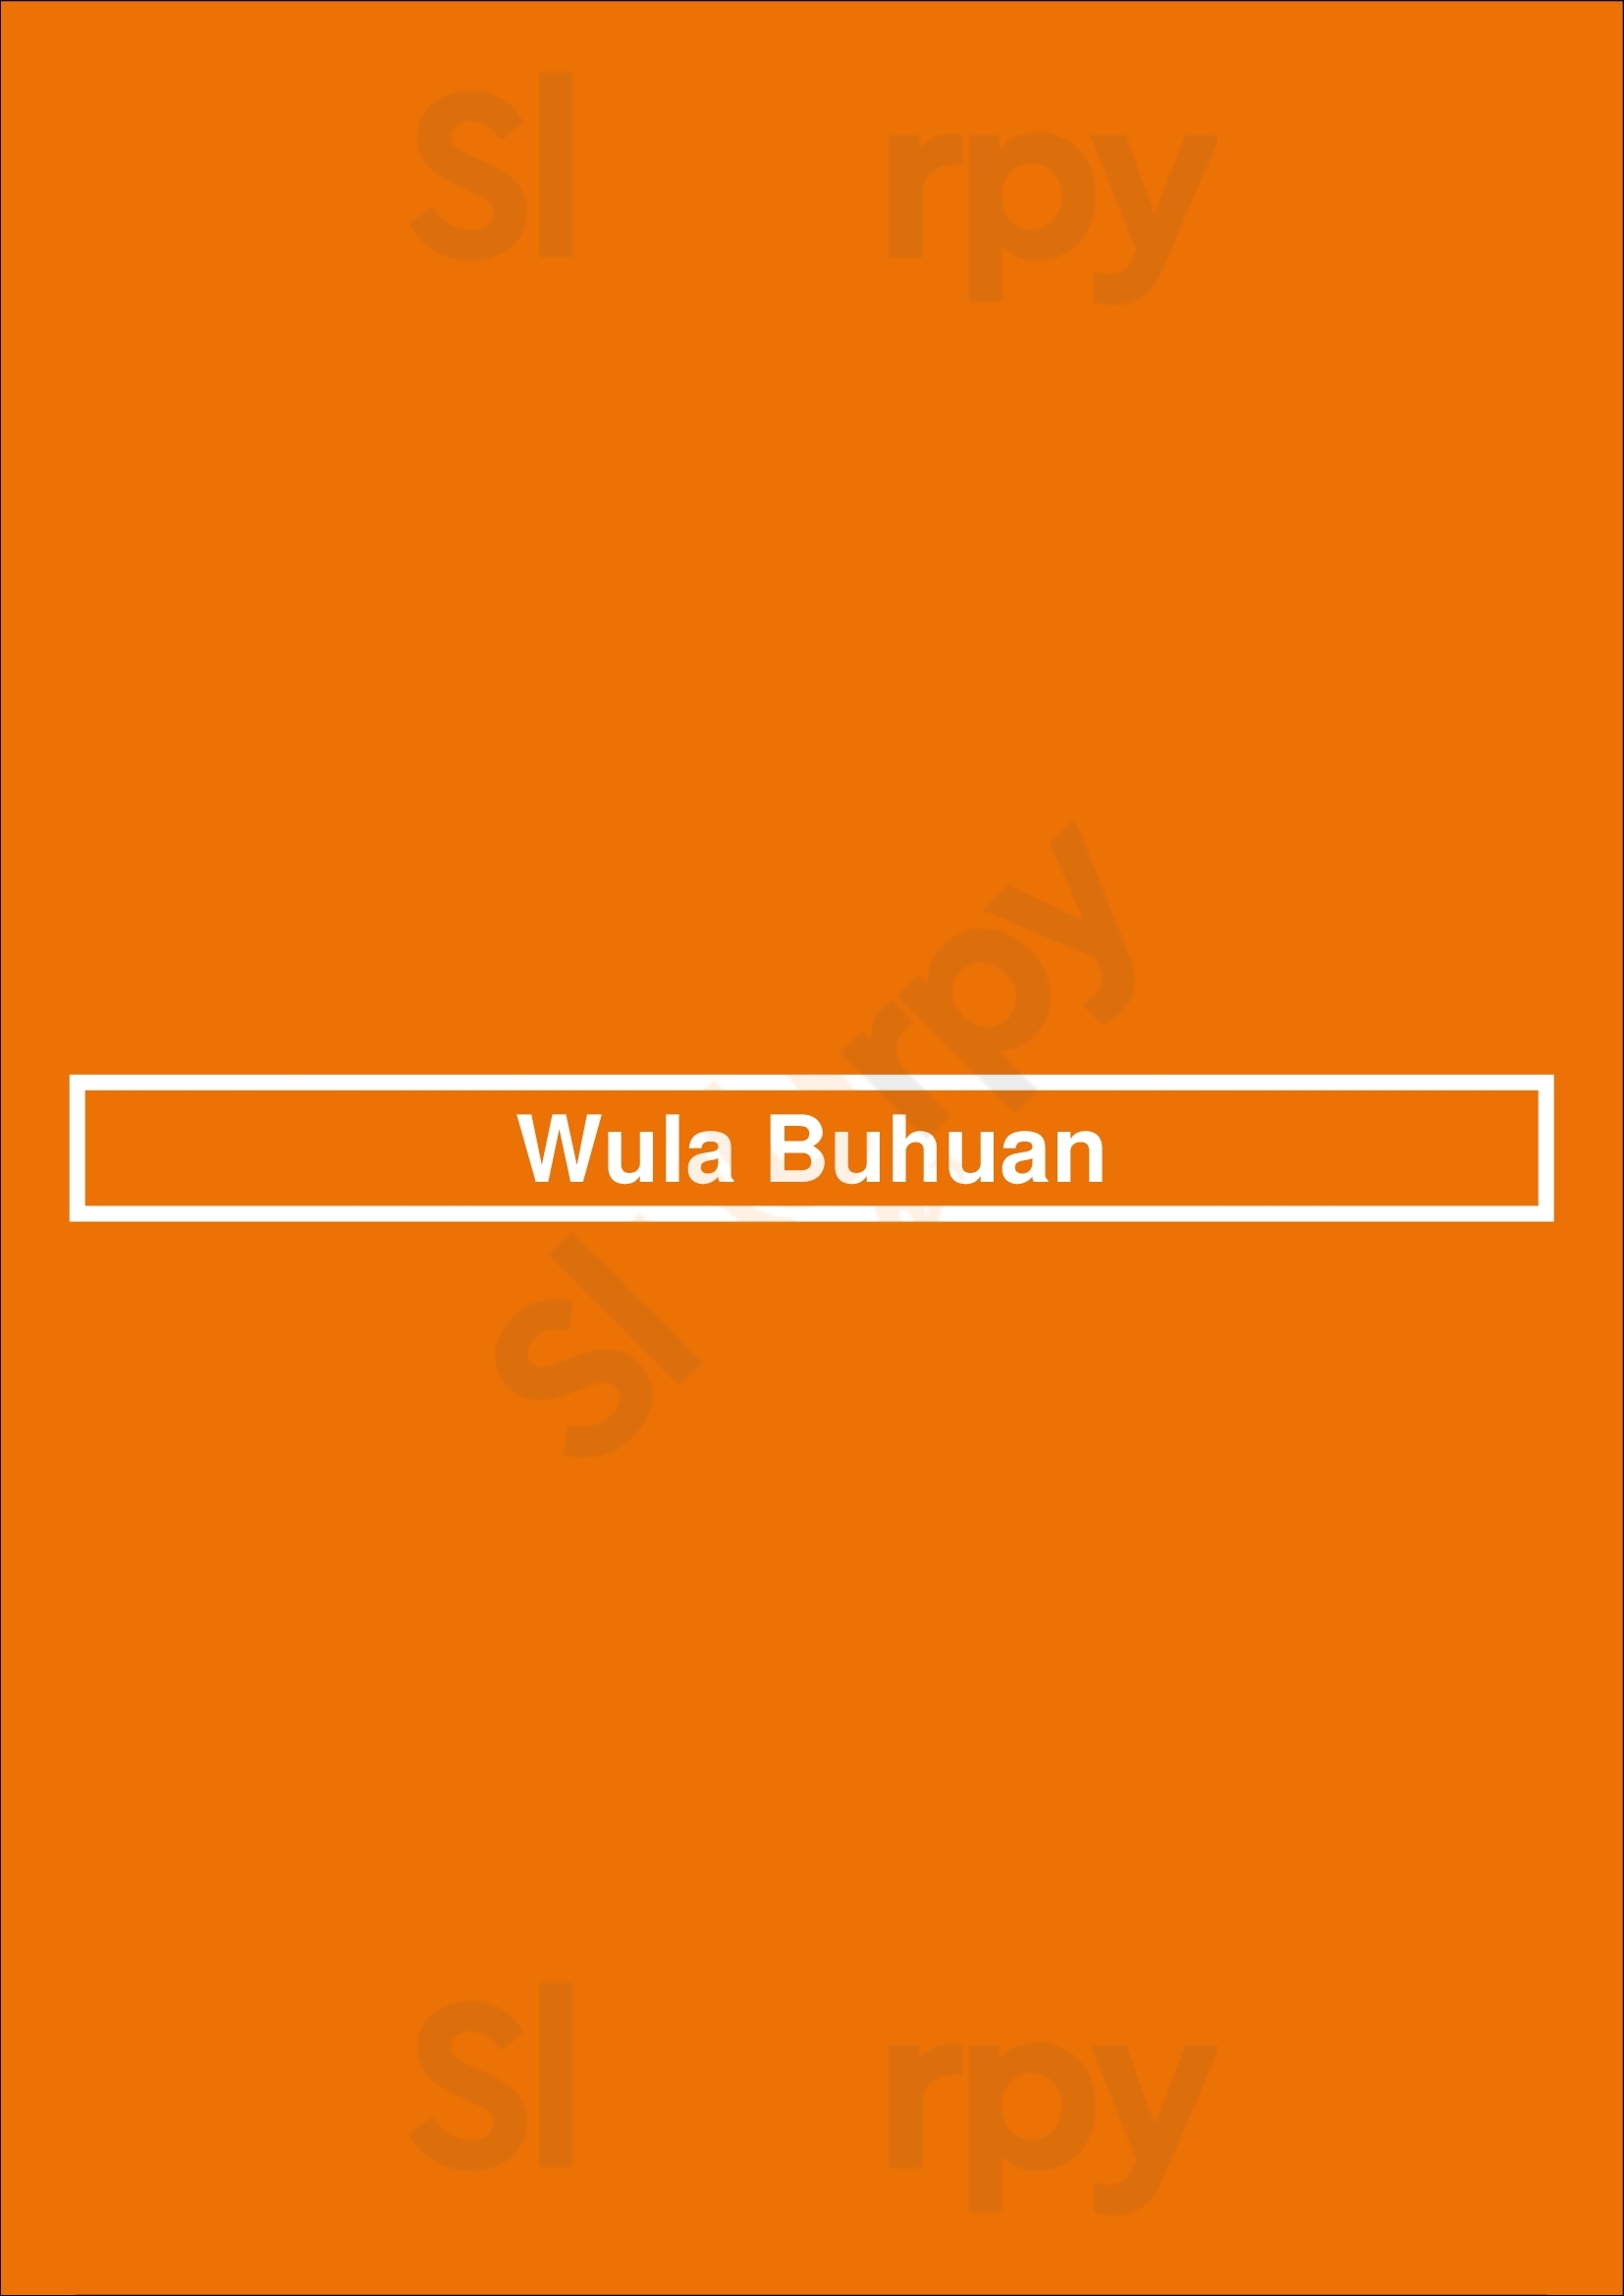 Wula Buhuan Houston Menu - 1